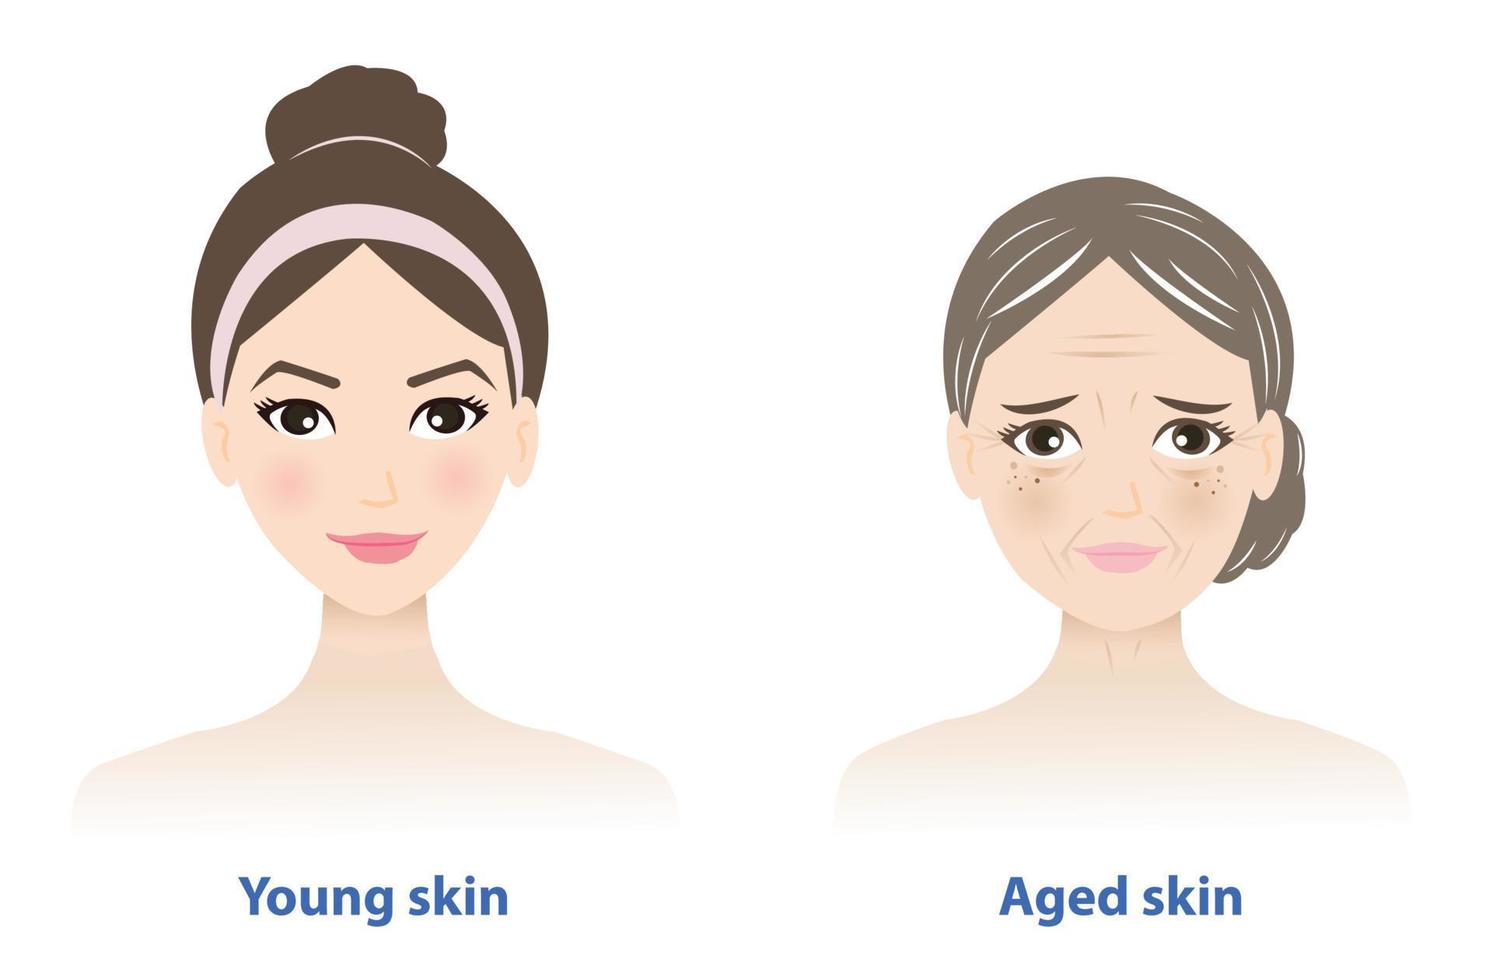 differenze fra giovane e anziano pelle. giovanile salutare pelle sembra liscio, stretto, forte e normale collagene contenuto. anziano pelle contiene parecchi segni di degenerazione. pelle cura e bellezza concetto. vettore